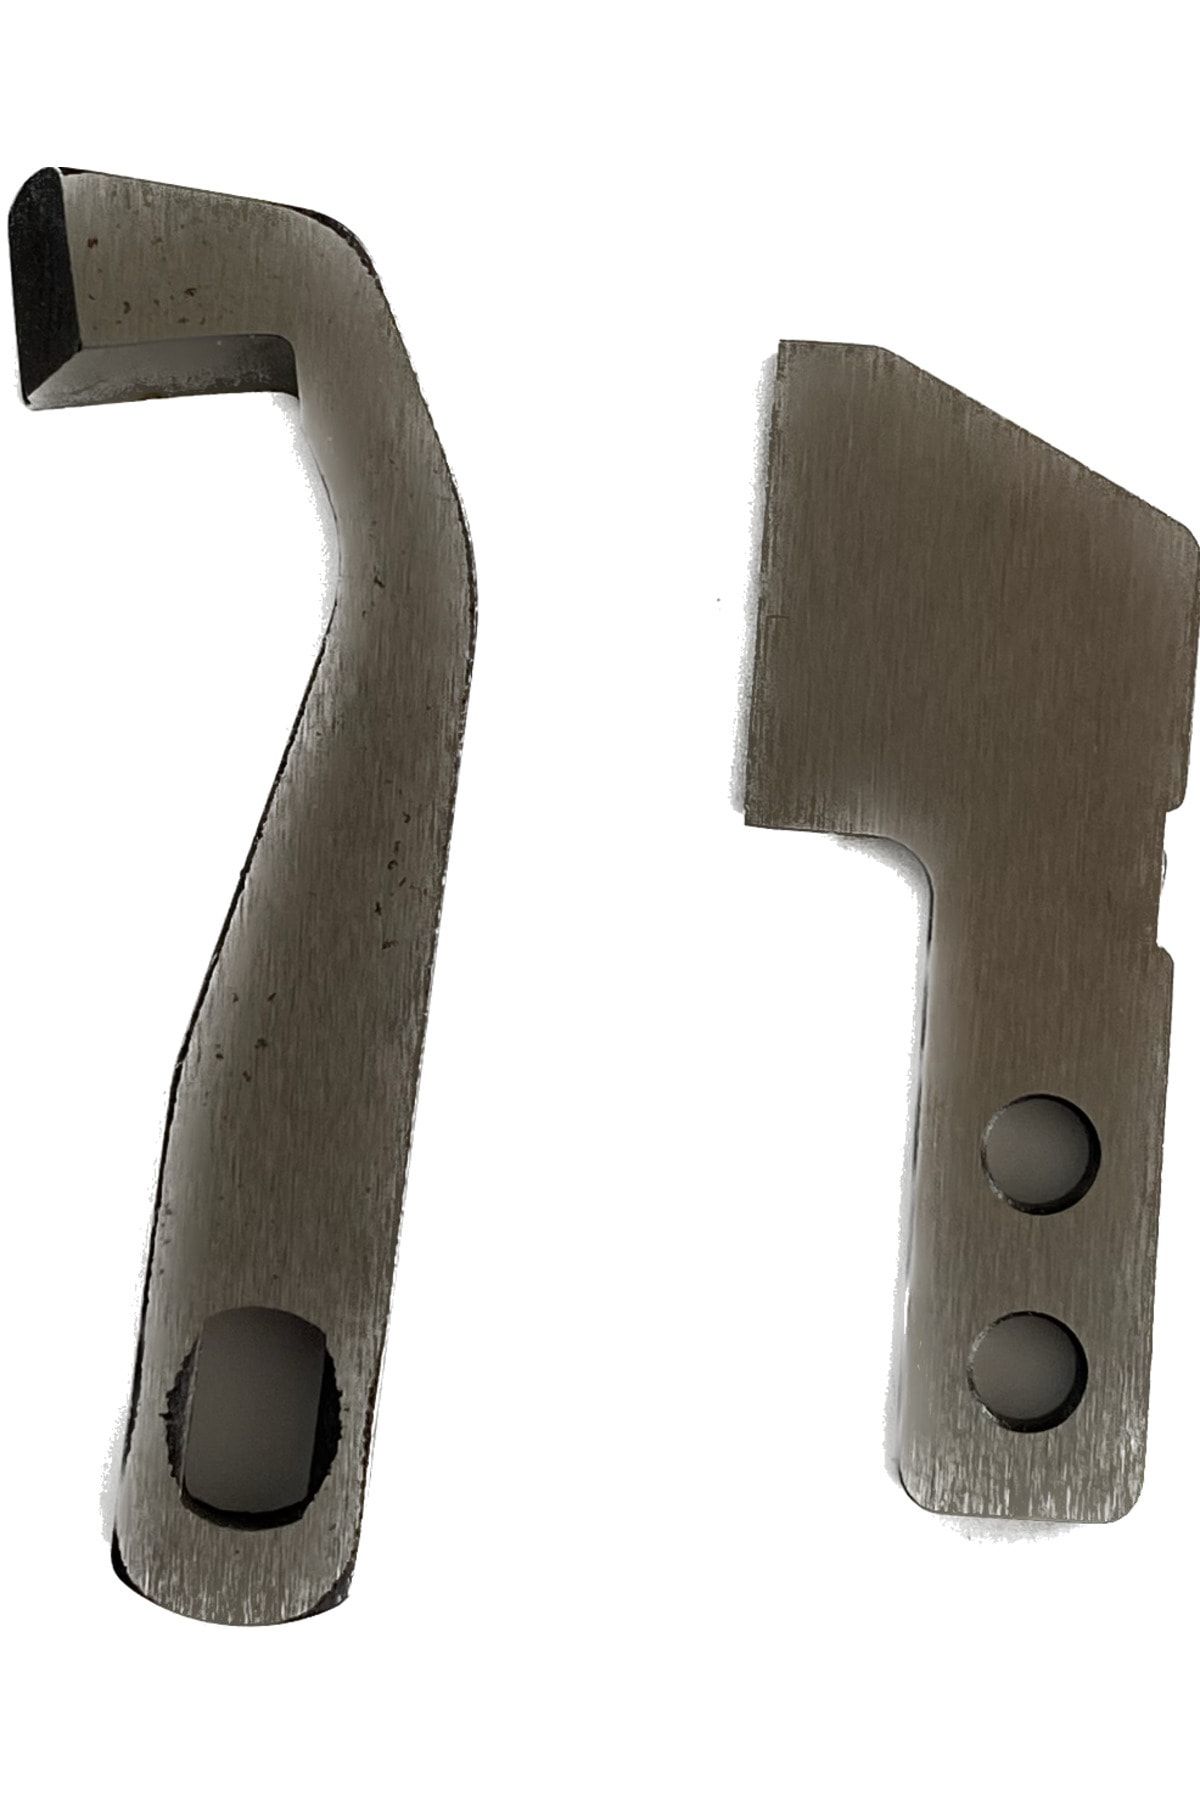 Pfaff Overlok Ve Coverlock Bıçak Seti - Uyumlu Modeller Için Açıklama Kısmına Bakınız.